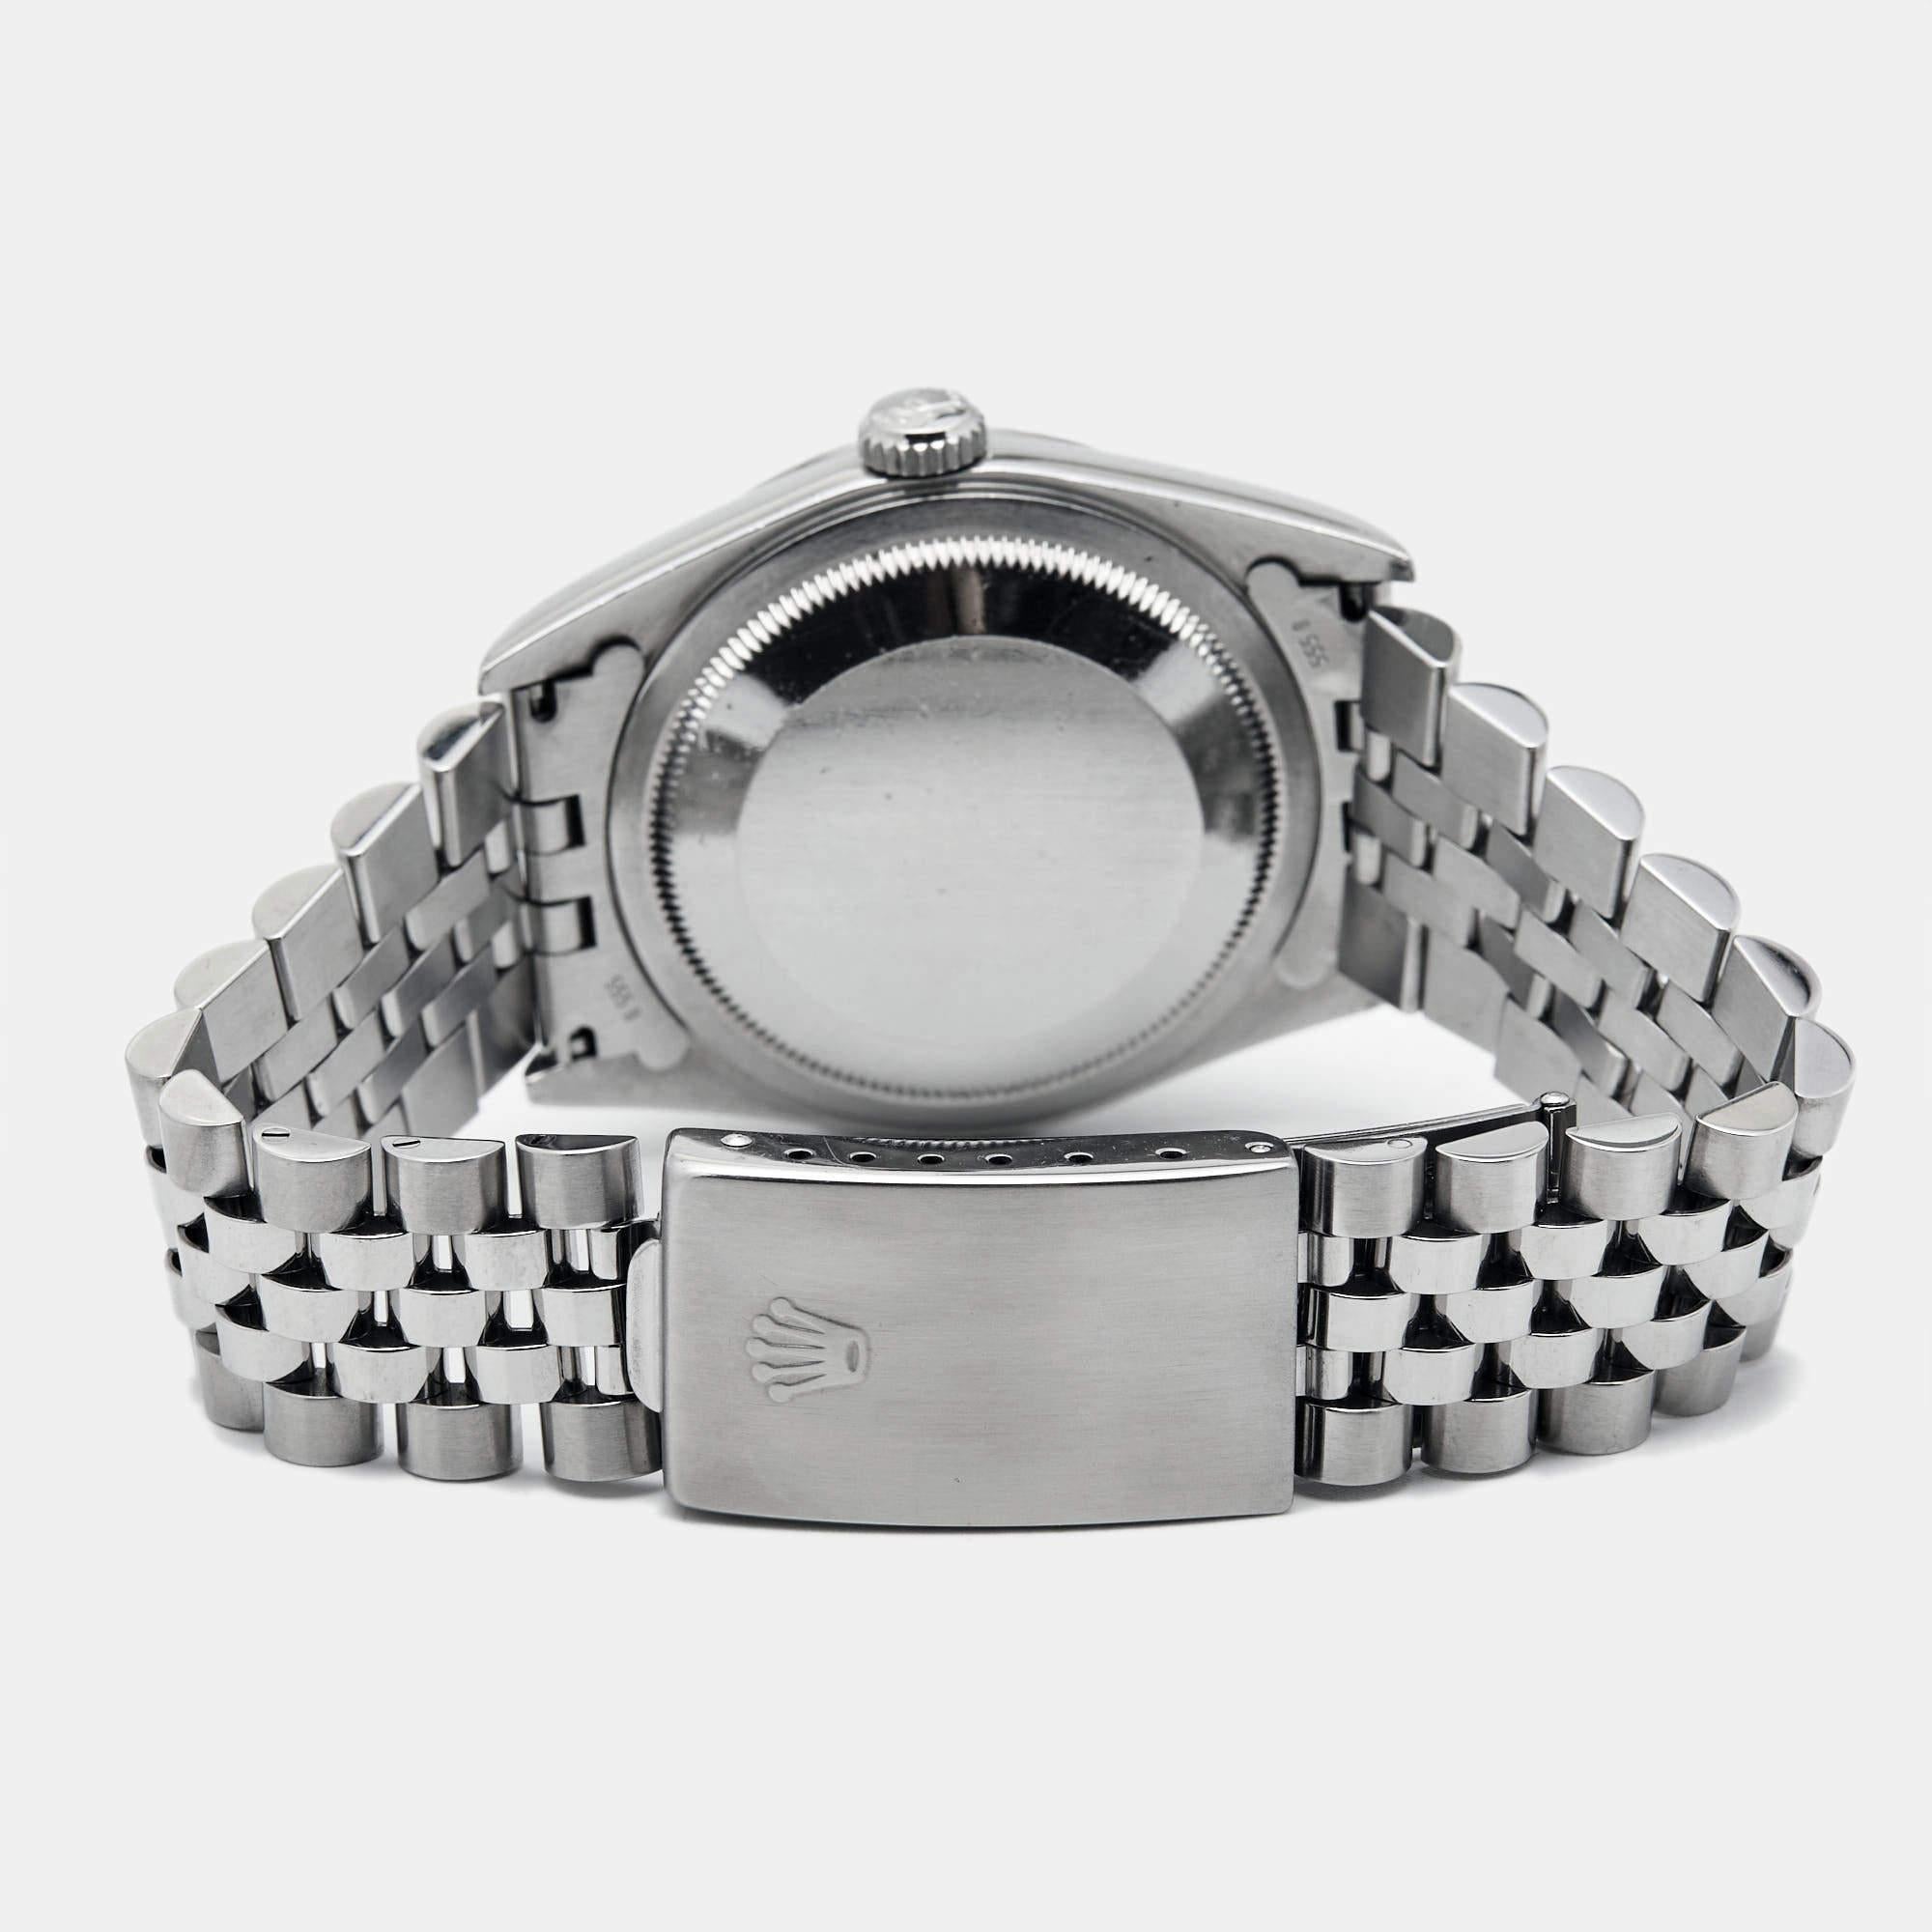 La Datejust est l'une des montres les plus reconnues et les plus convoitées de la maison Rolex. Il a une apparence distincte et un attrait irréfutable. Réalisée en acier inoxydable et en or blanc 18 carats, cette authentique montre-bracelet Rolex